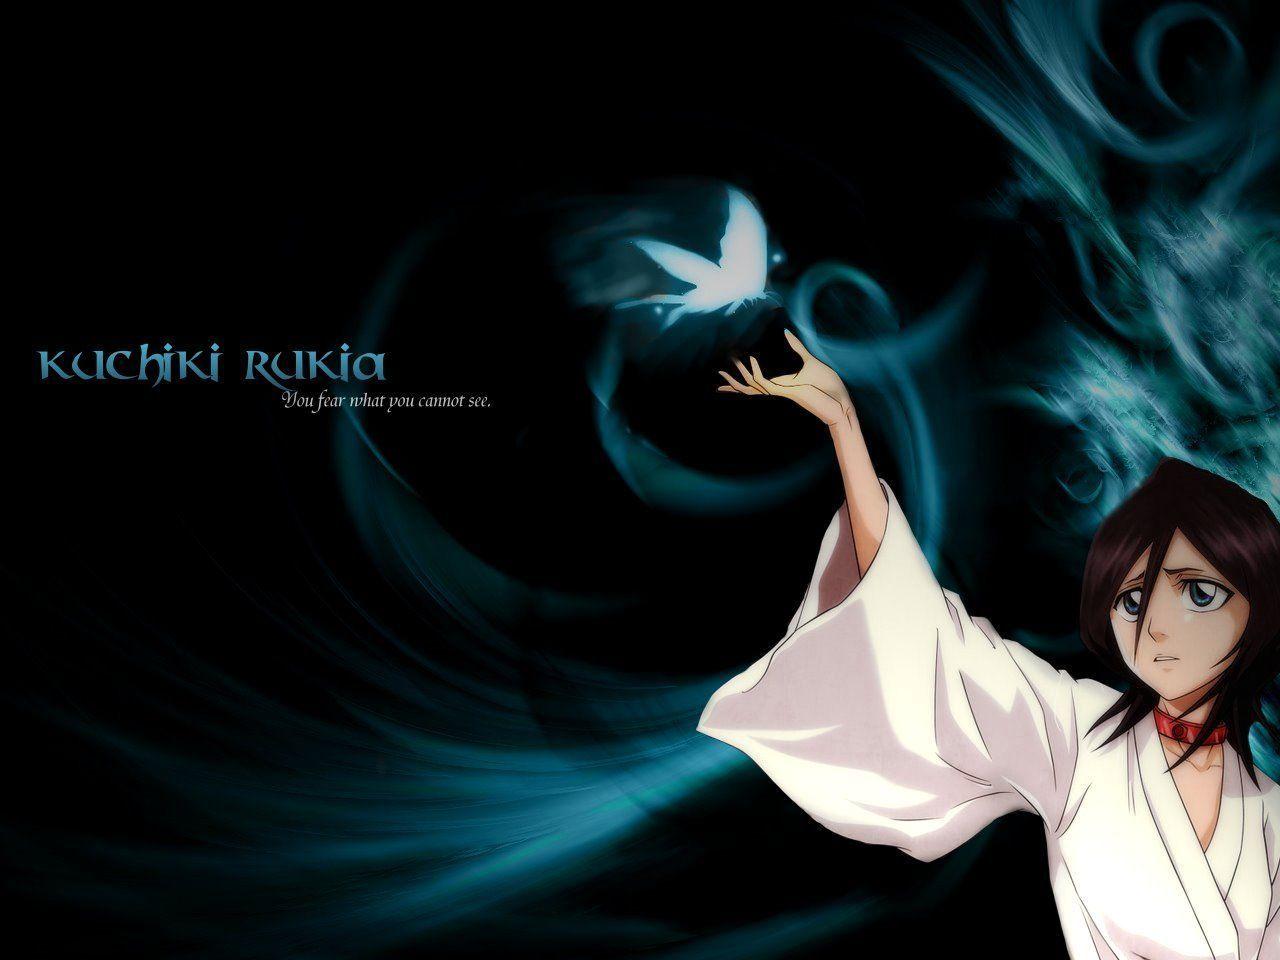 Stunning Rukia Kuchiki Wallpaper 1600x1200PX Rukia Kuchiki